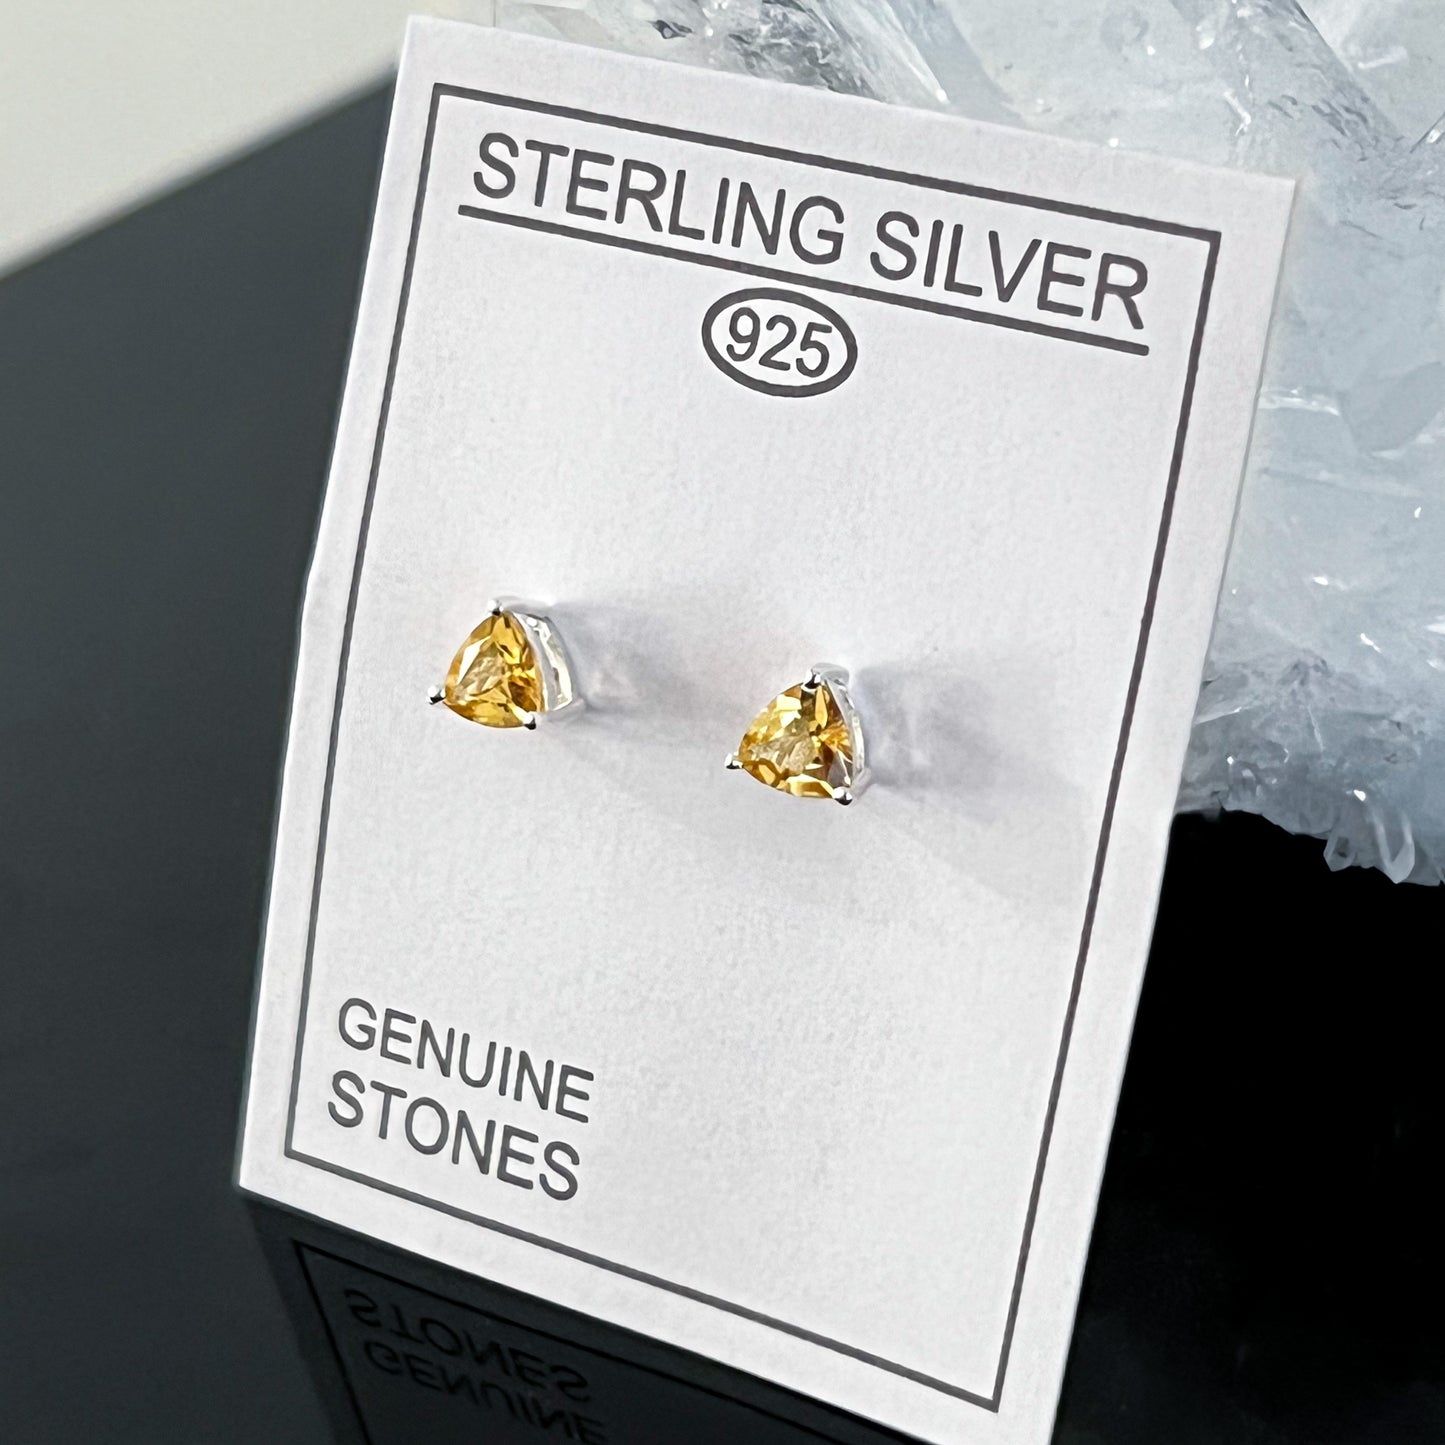 Citrine Sterling Silver Stud Earrings